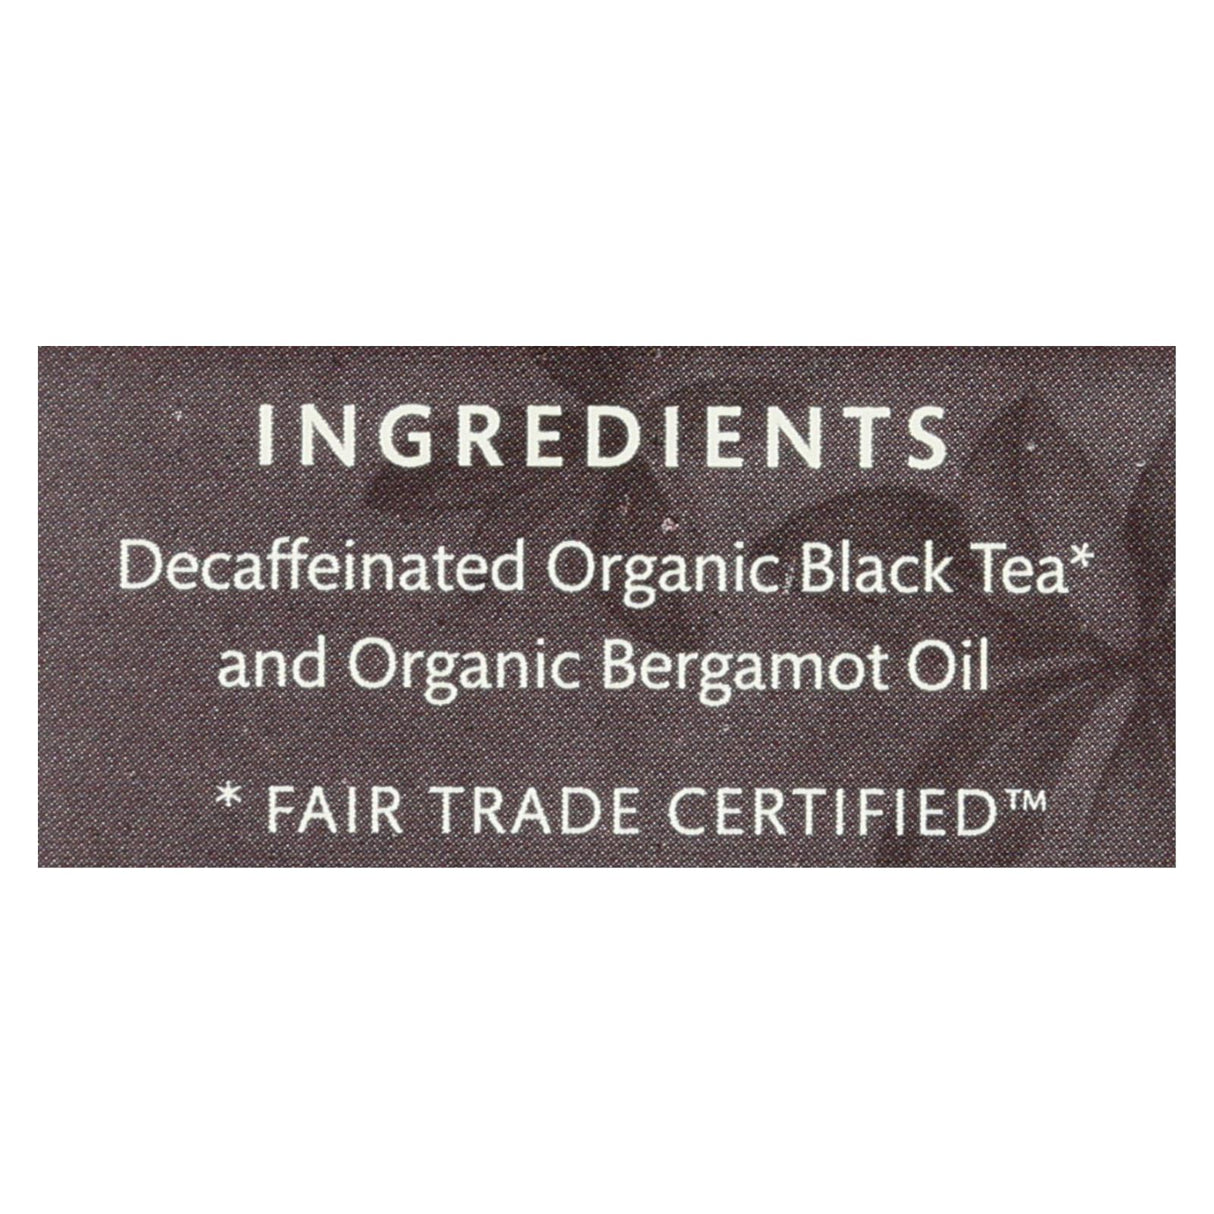 Choice Organic Teas Decaffeinated Earl Grey Tea (Pack of 6 - 16 Bags) - Cozy Farm 